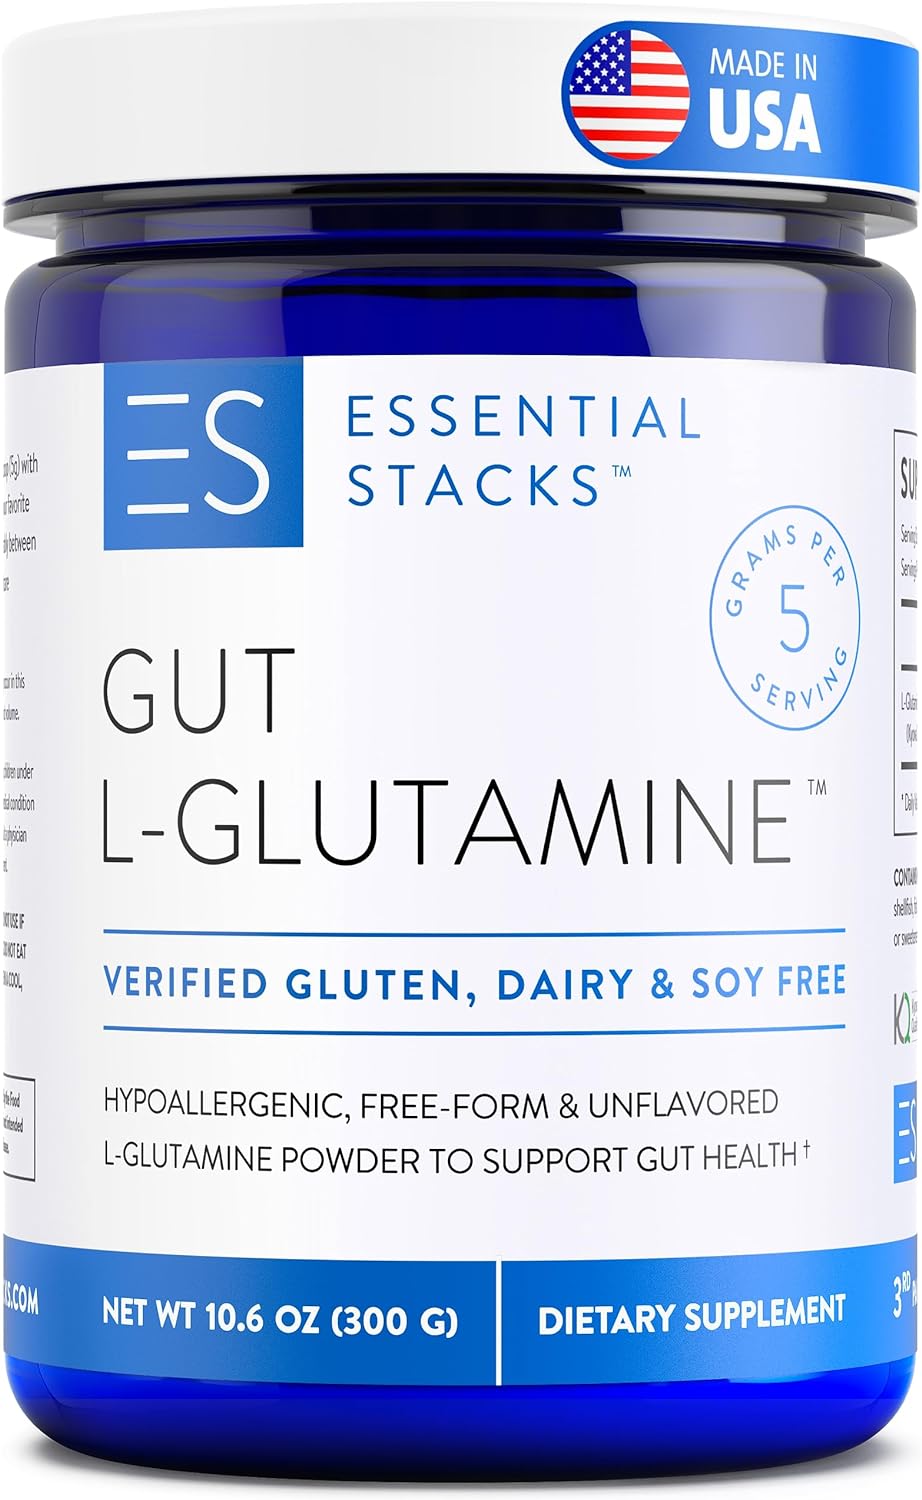 Essential Stacks Gut L-Glutamine Powder - Made in USA - Pure L Glutamine Powder for Gut Health - Dairy, Soy & Gluten Free, Non-GMO, Vegan Glutamine Supplement